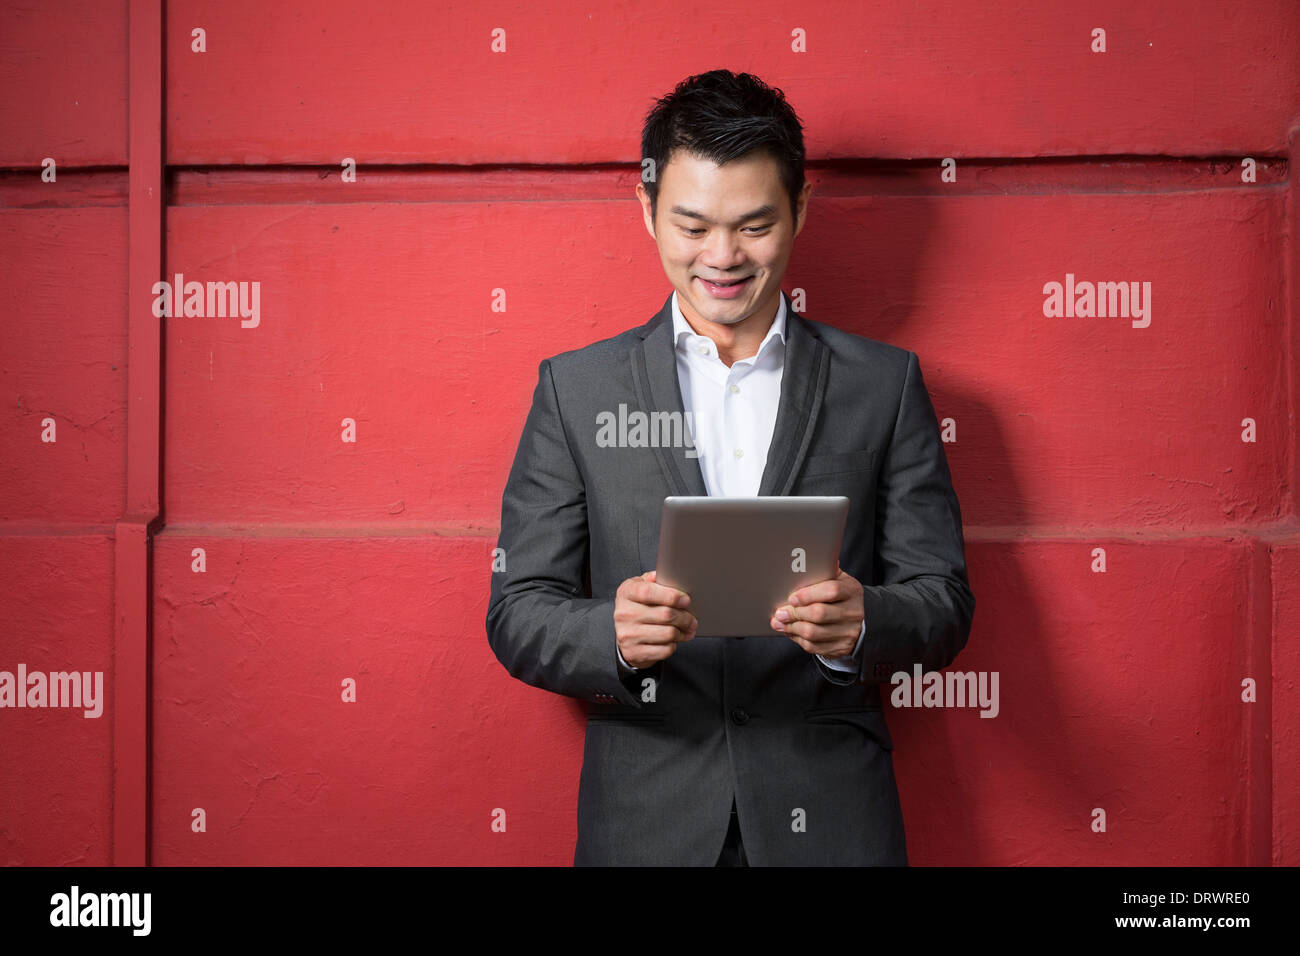 Uomo cinese con un computer tablet. Asian business man la lettura di una tavoletta digitale computer, appoggiata contro una parete rossa Foto Stock